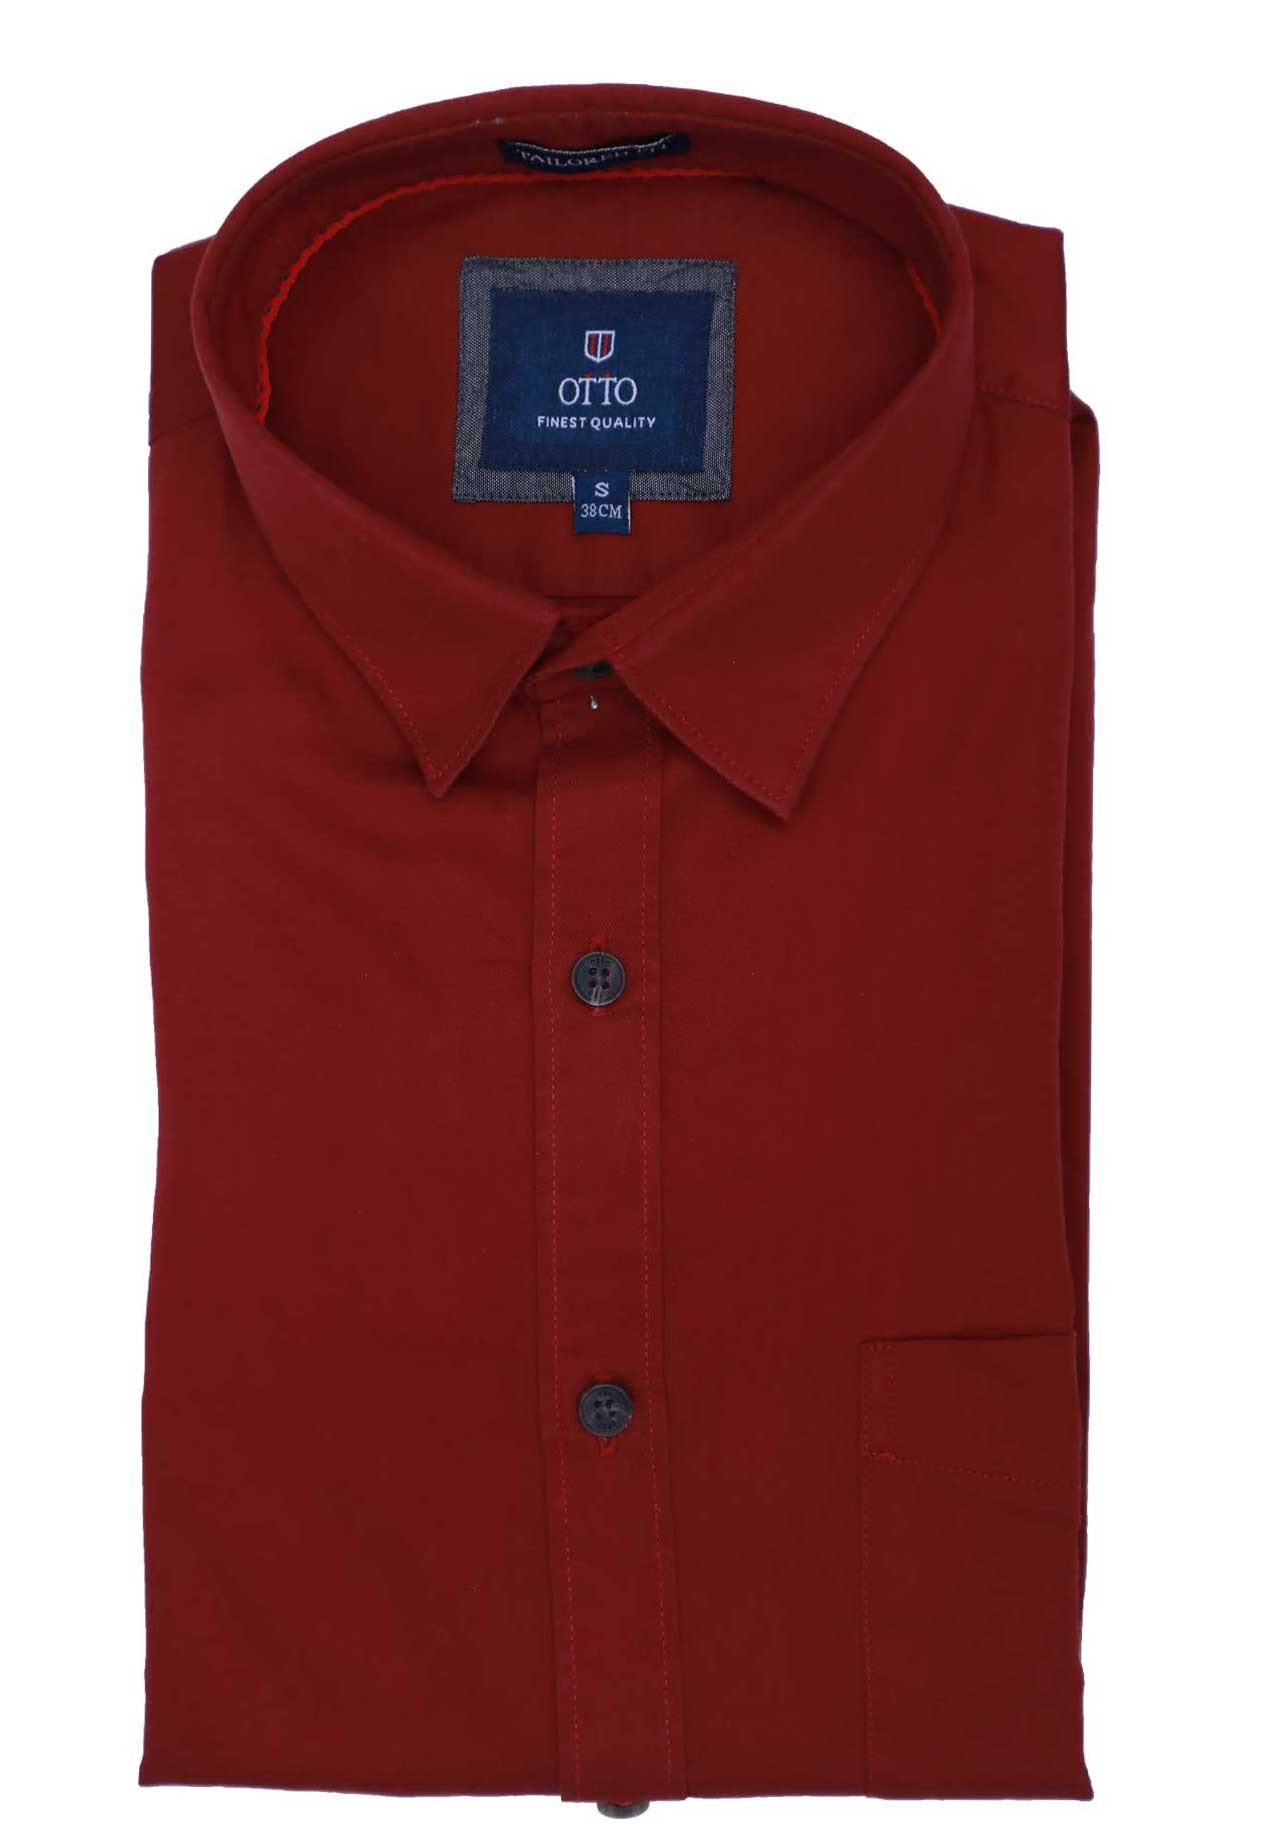 Buy Otto Mens Semi Casual Shirt Red Online Dubai, UAE | OurShopee.com ...